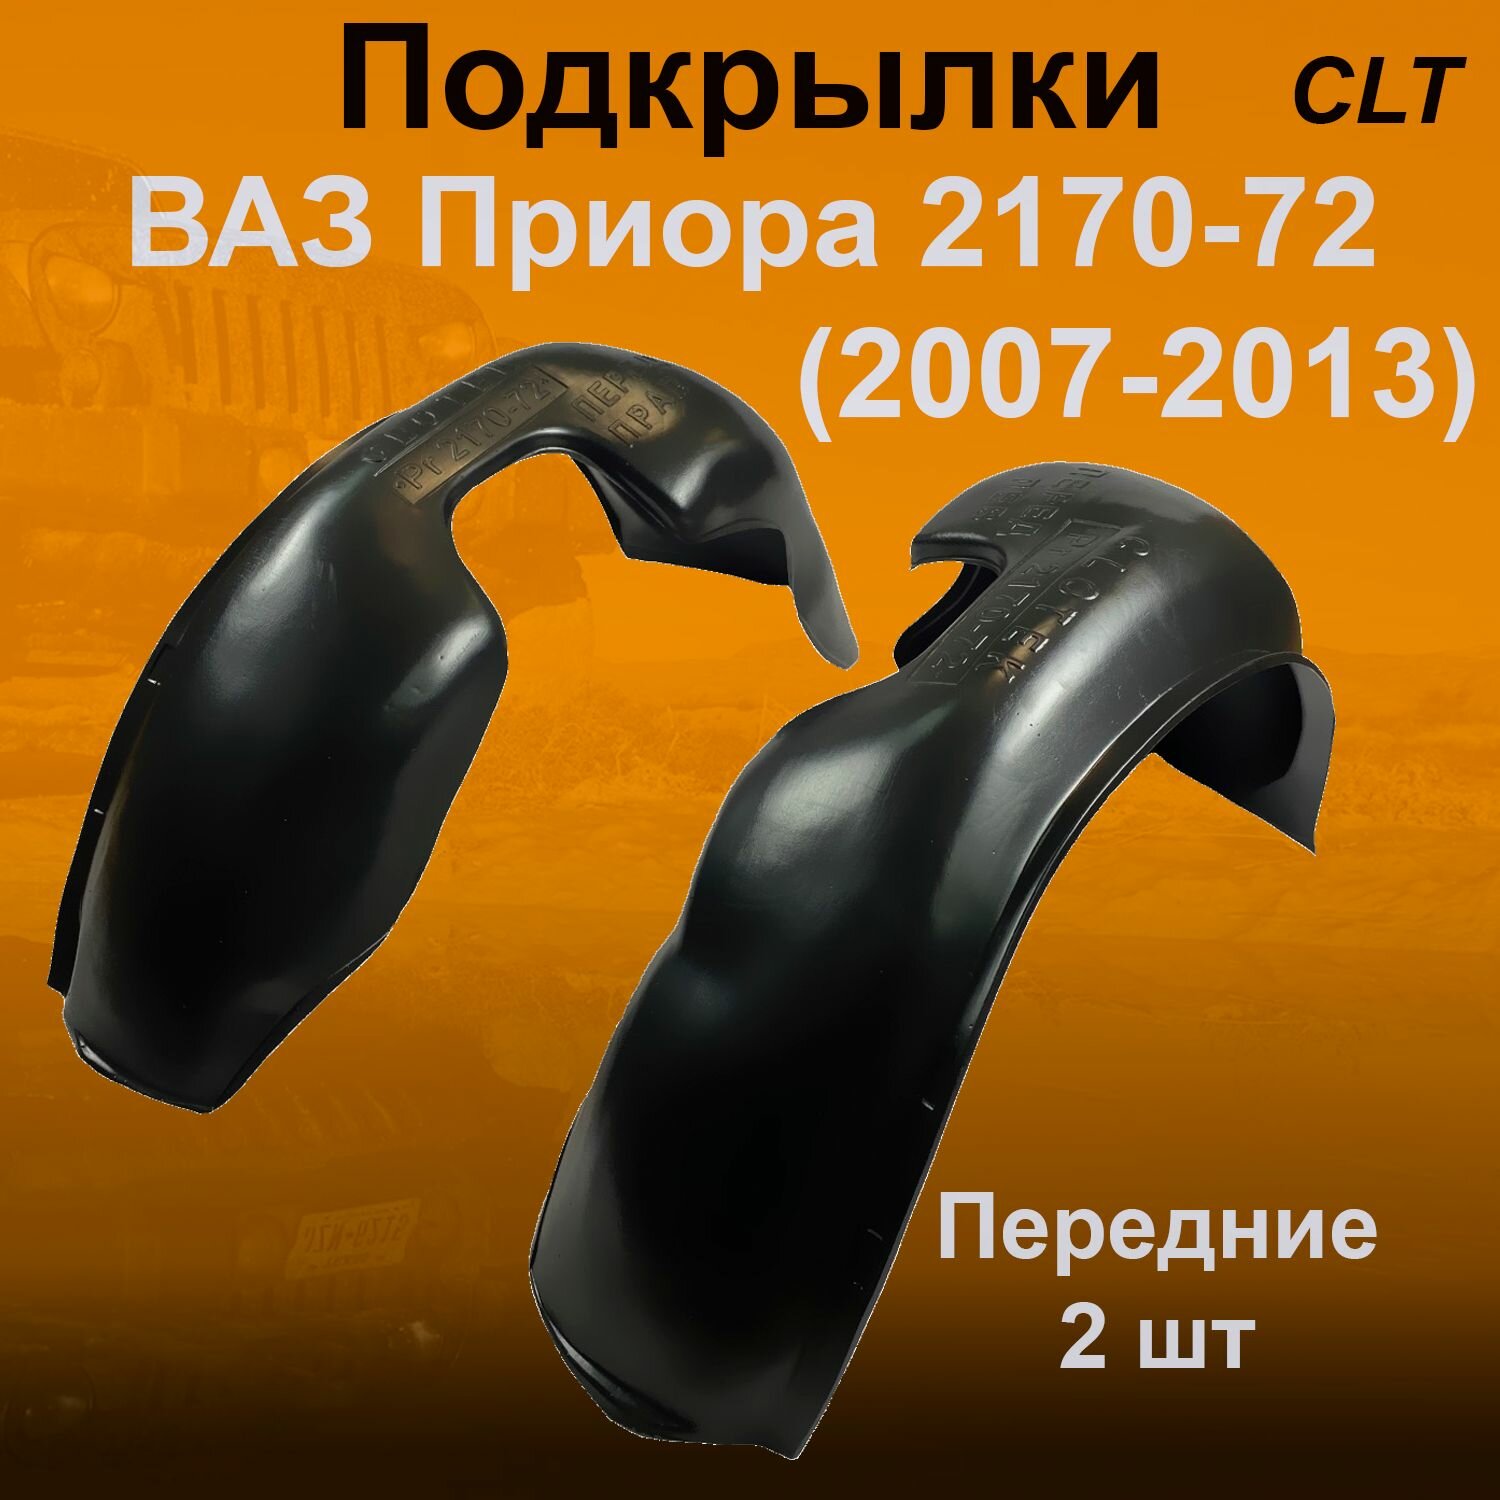 Подкрылки передние для Lada Priora 2170-72 (2007-2013) 2 шт